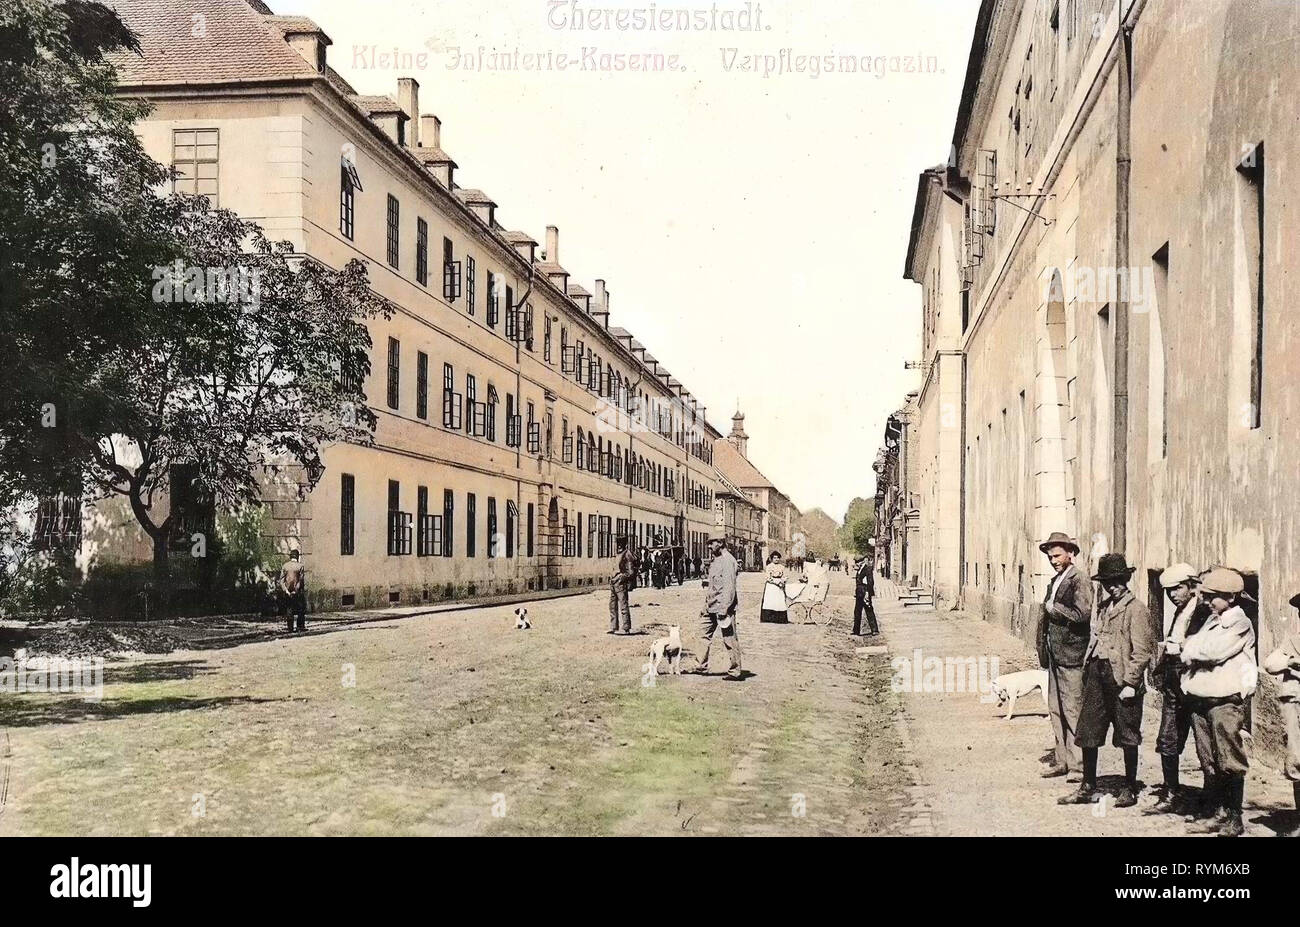 Österreichisch-ungarischen Armee Kaserne in Terezín 1903, Aussig, Theresienstadt, Kleine Infanterie, Kaserne, Verpflegsmagazin, Tschechische Republik Stockfoto